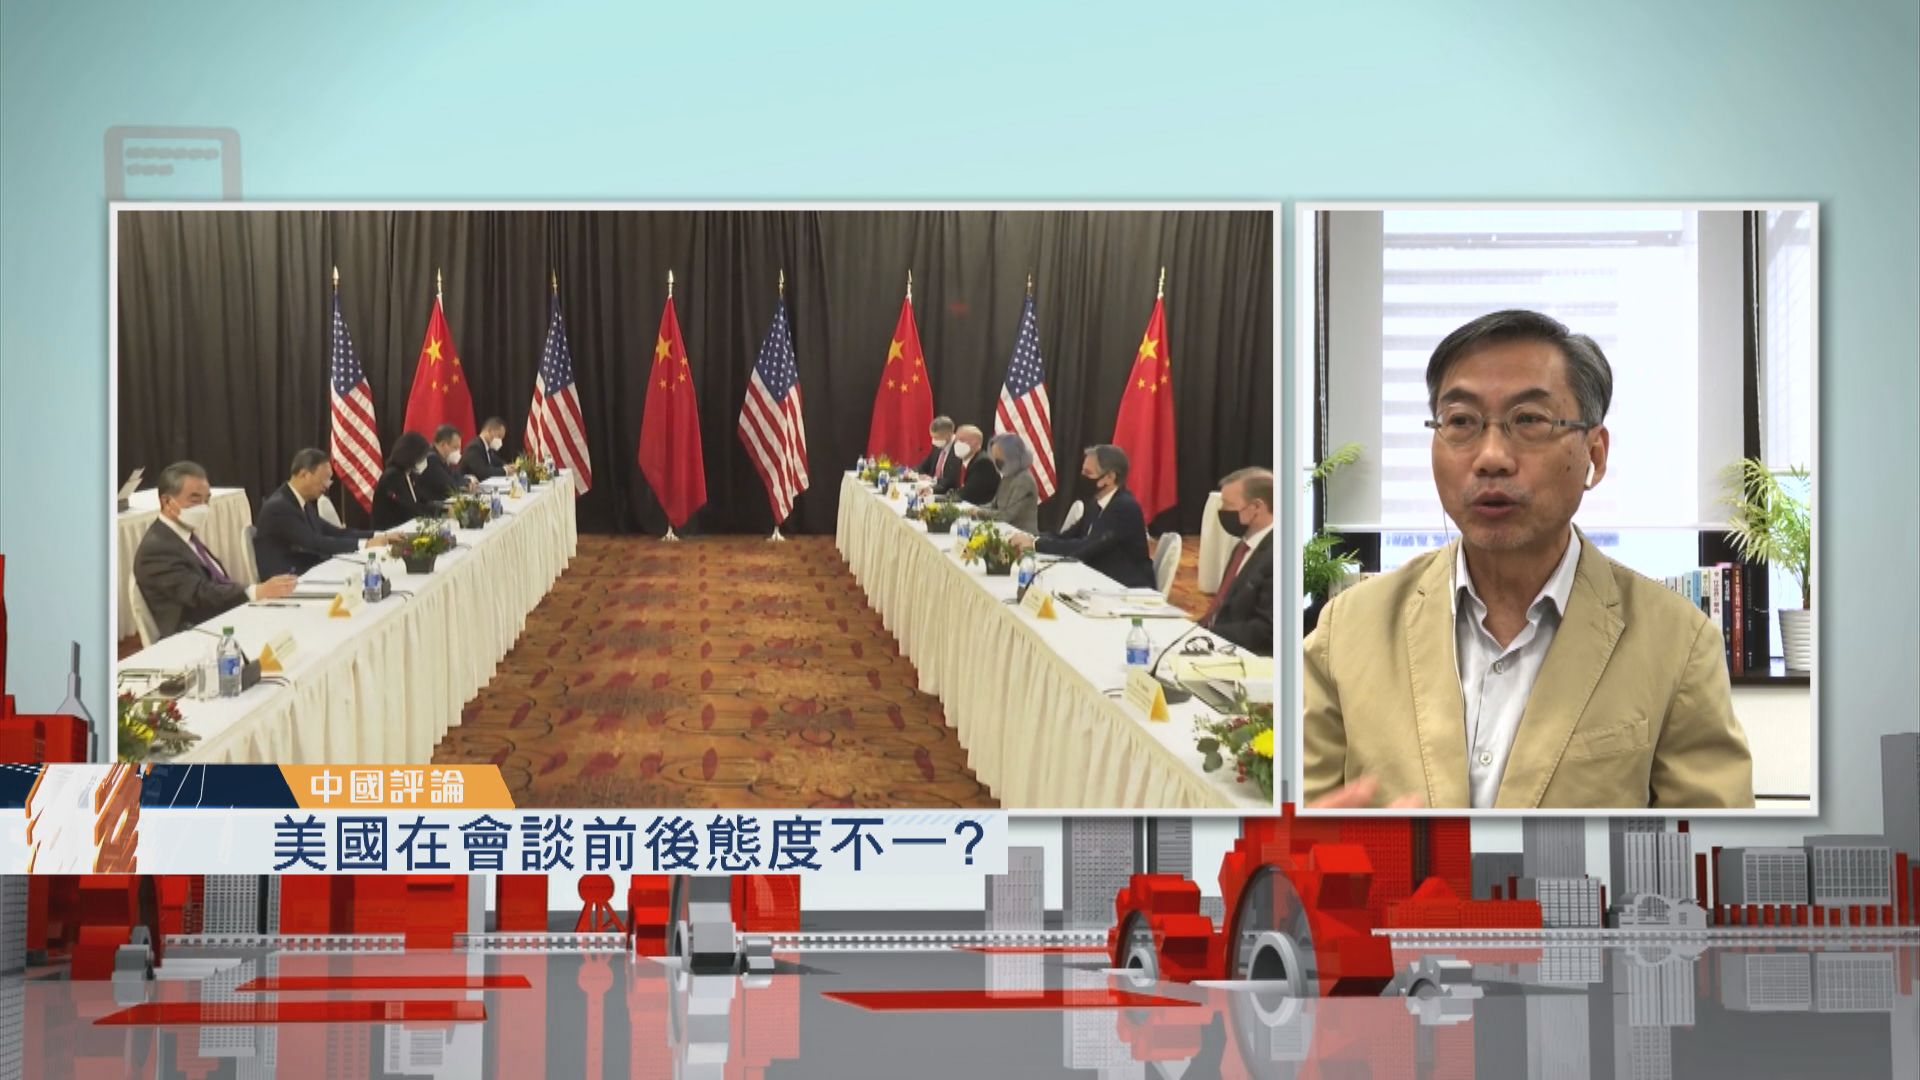 【中國評論】中美元首視像通話討論兩國關係及烏克蘭局勢